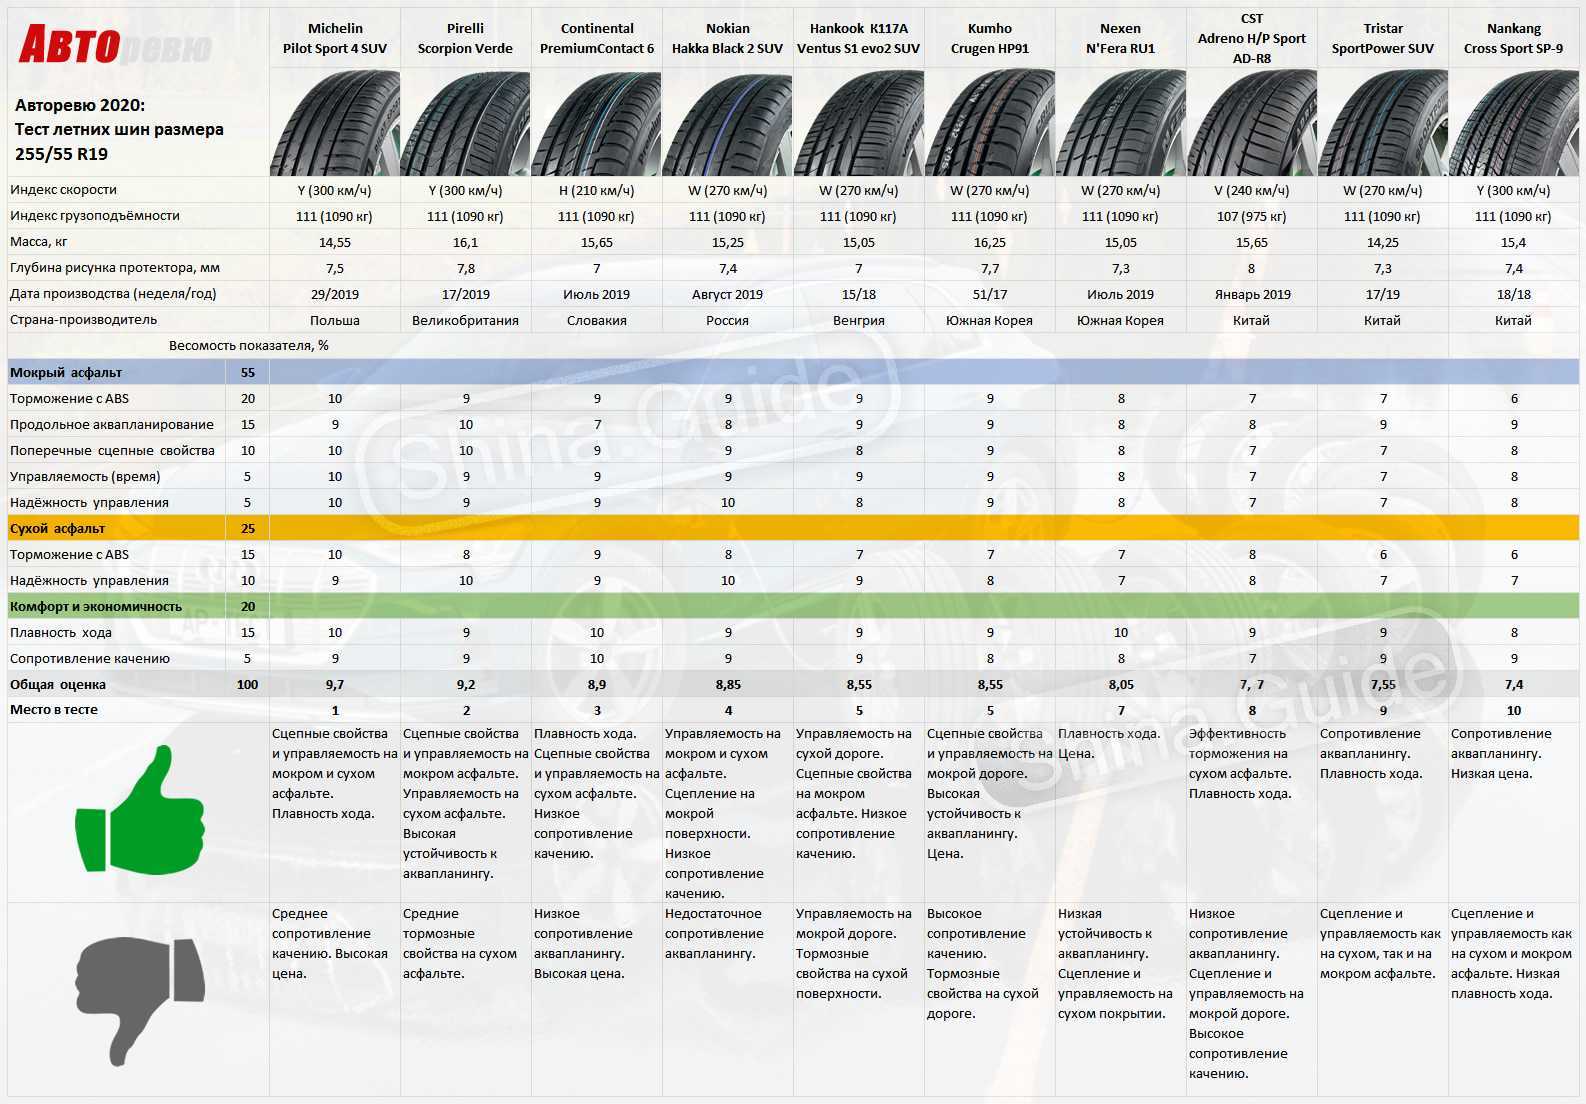 Топ-10 вариантов летней резины для кроссоверов 🦈 avtoshark.com